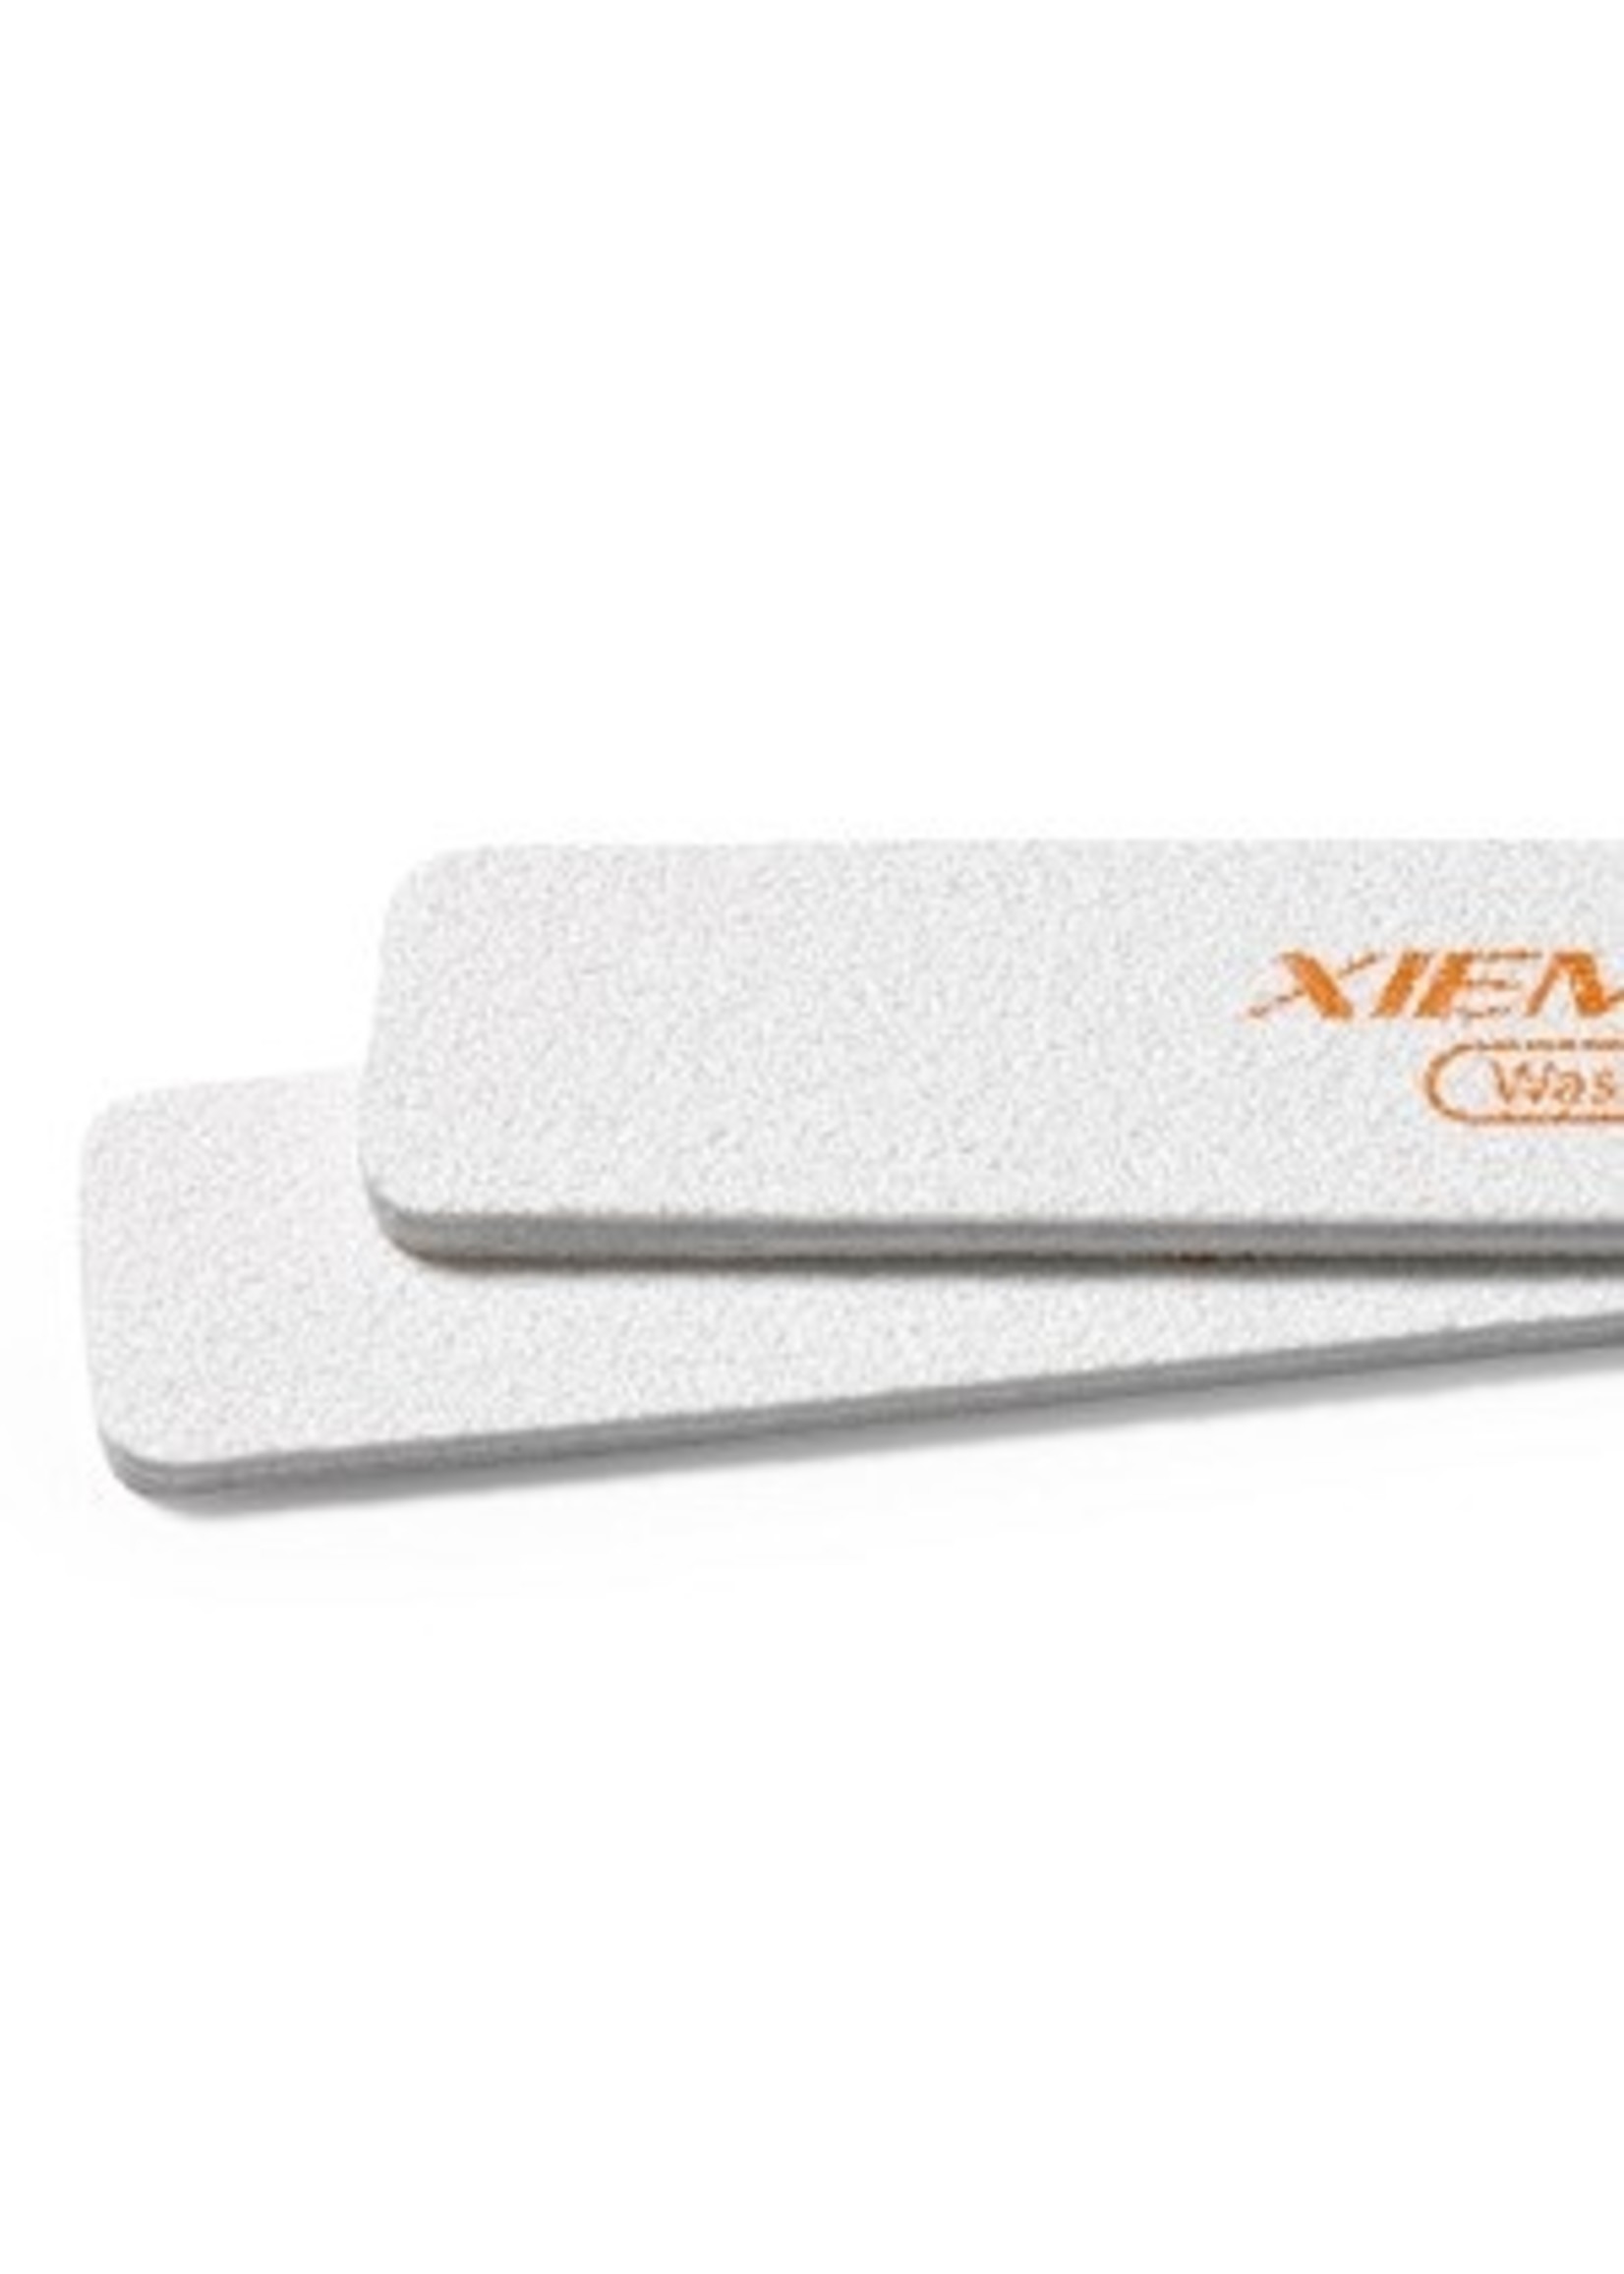 Order on sale Xiem Tools Sand Sticks for Porcelain (2)